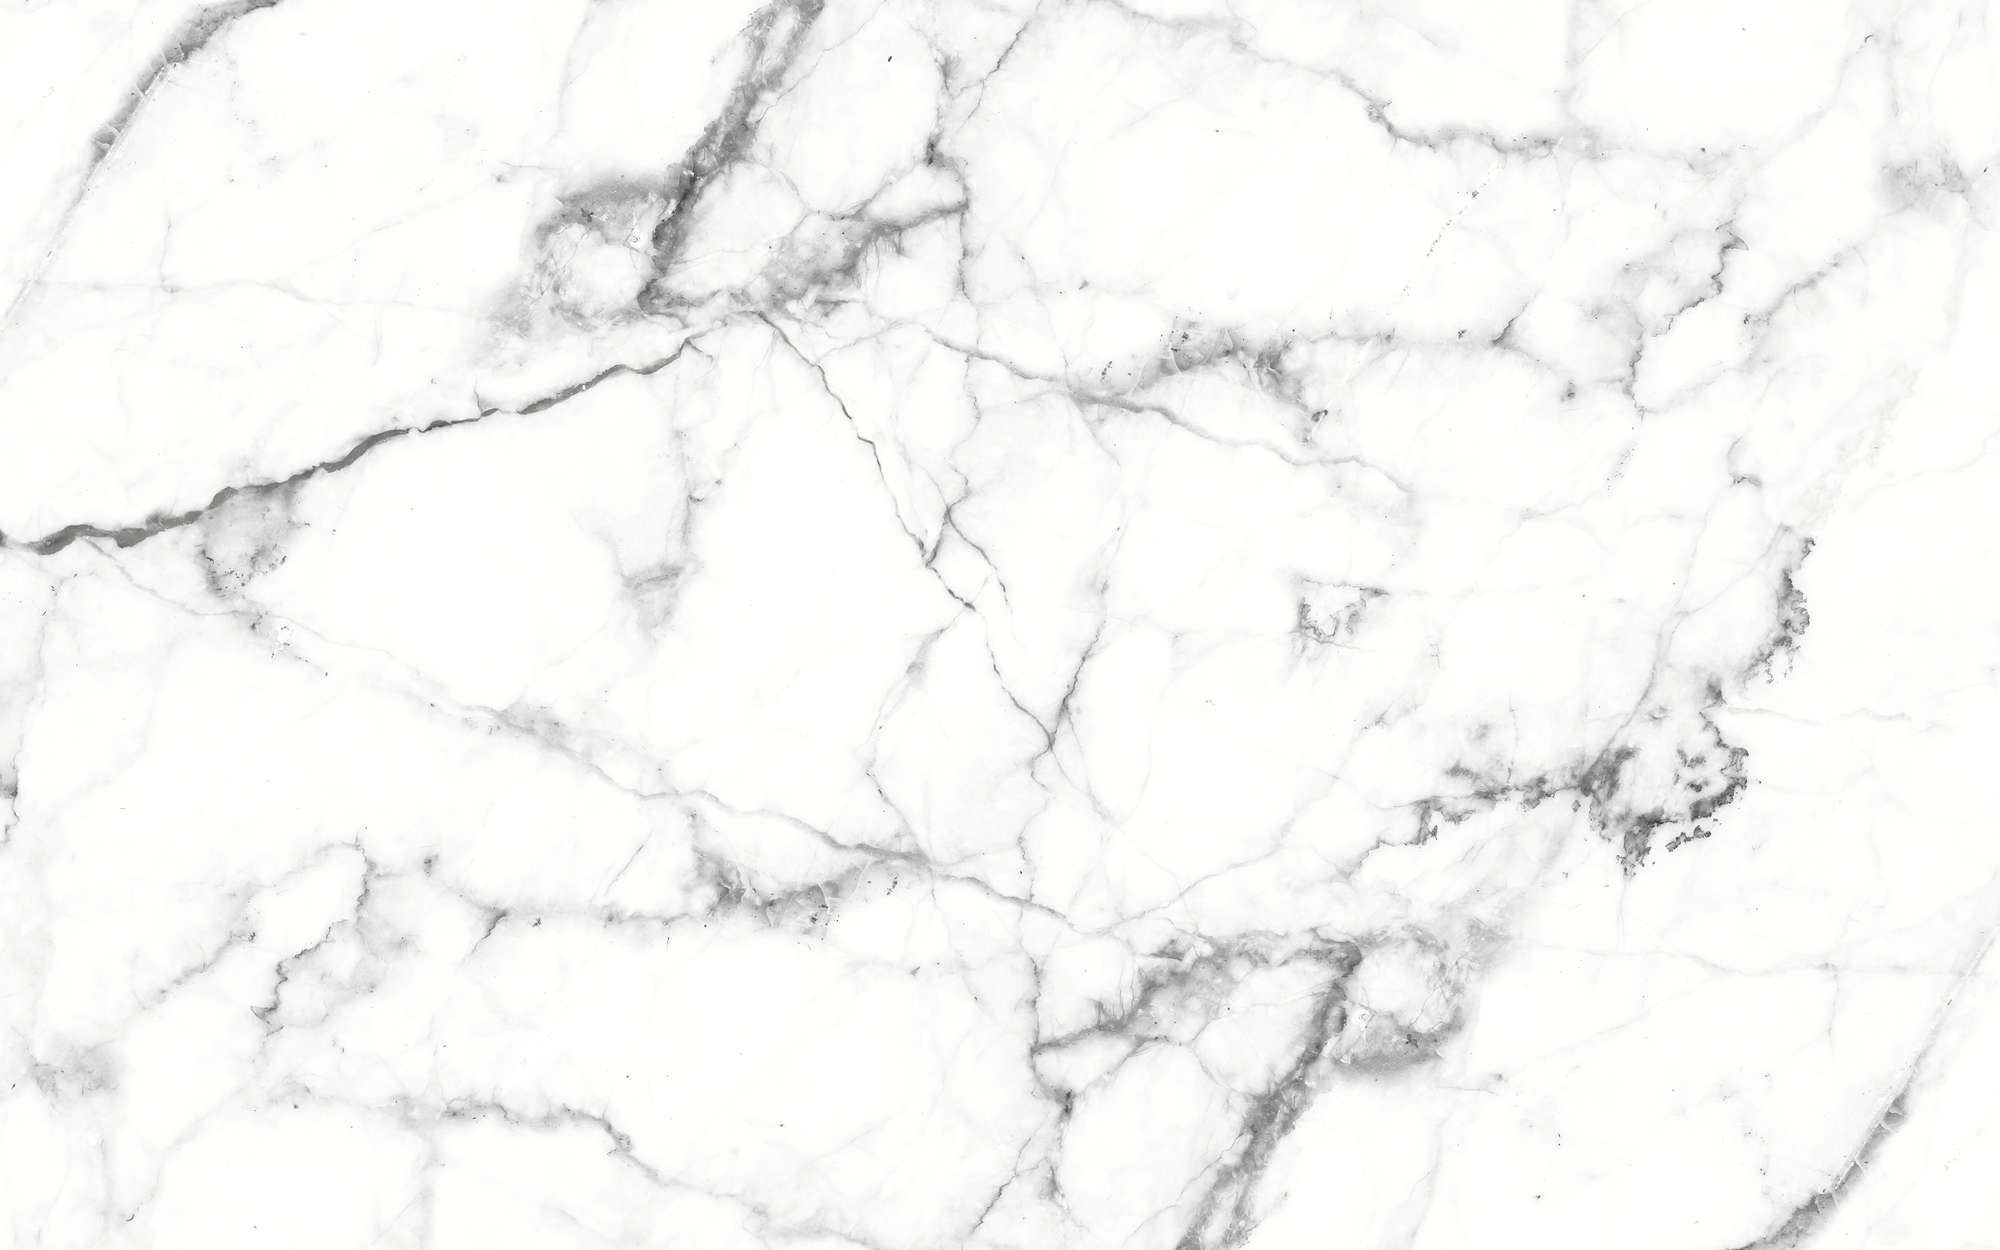             Photo wallpaper white marble elegant marble - white, black
        